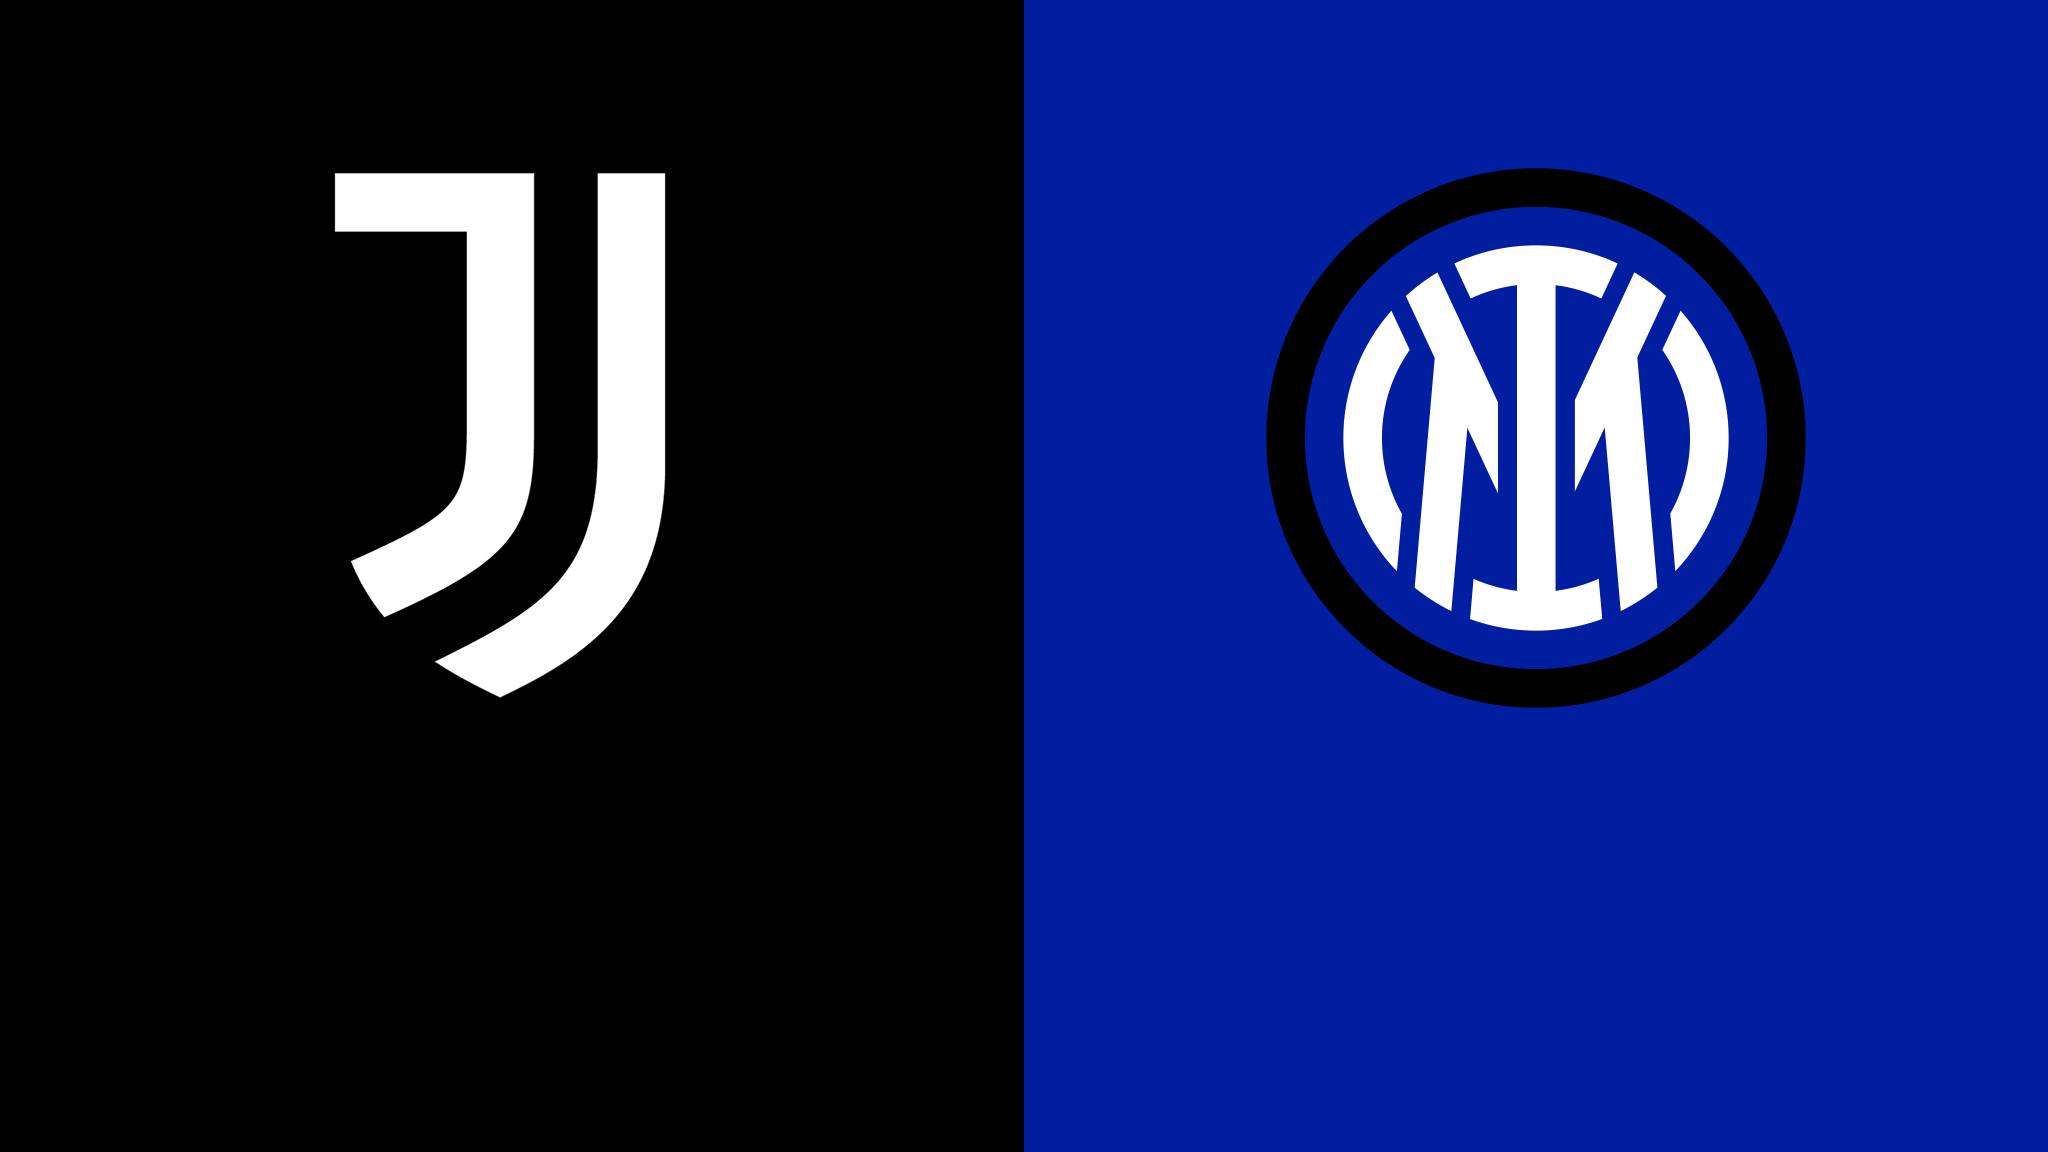 Juventus Inter maçı Nesine, TRT Spor canlı izle 4 Nisan 2023